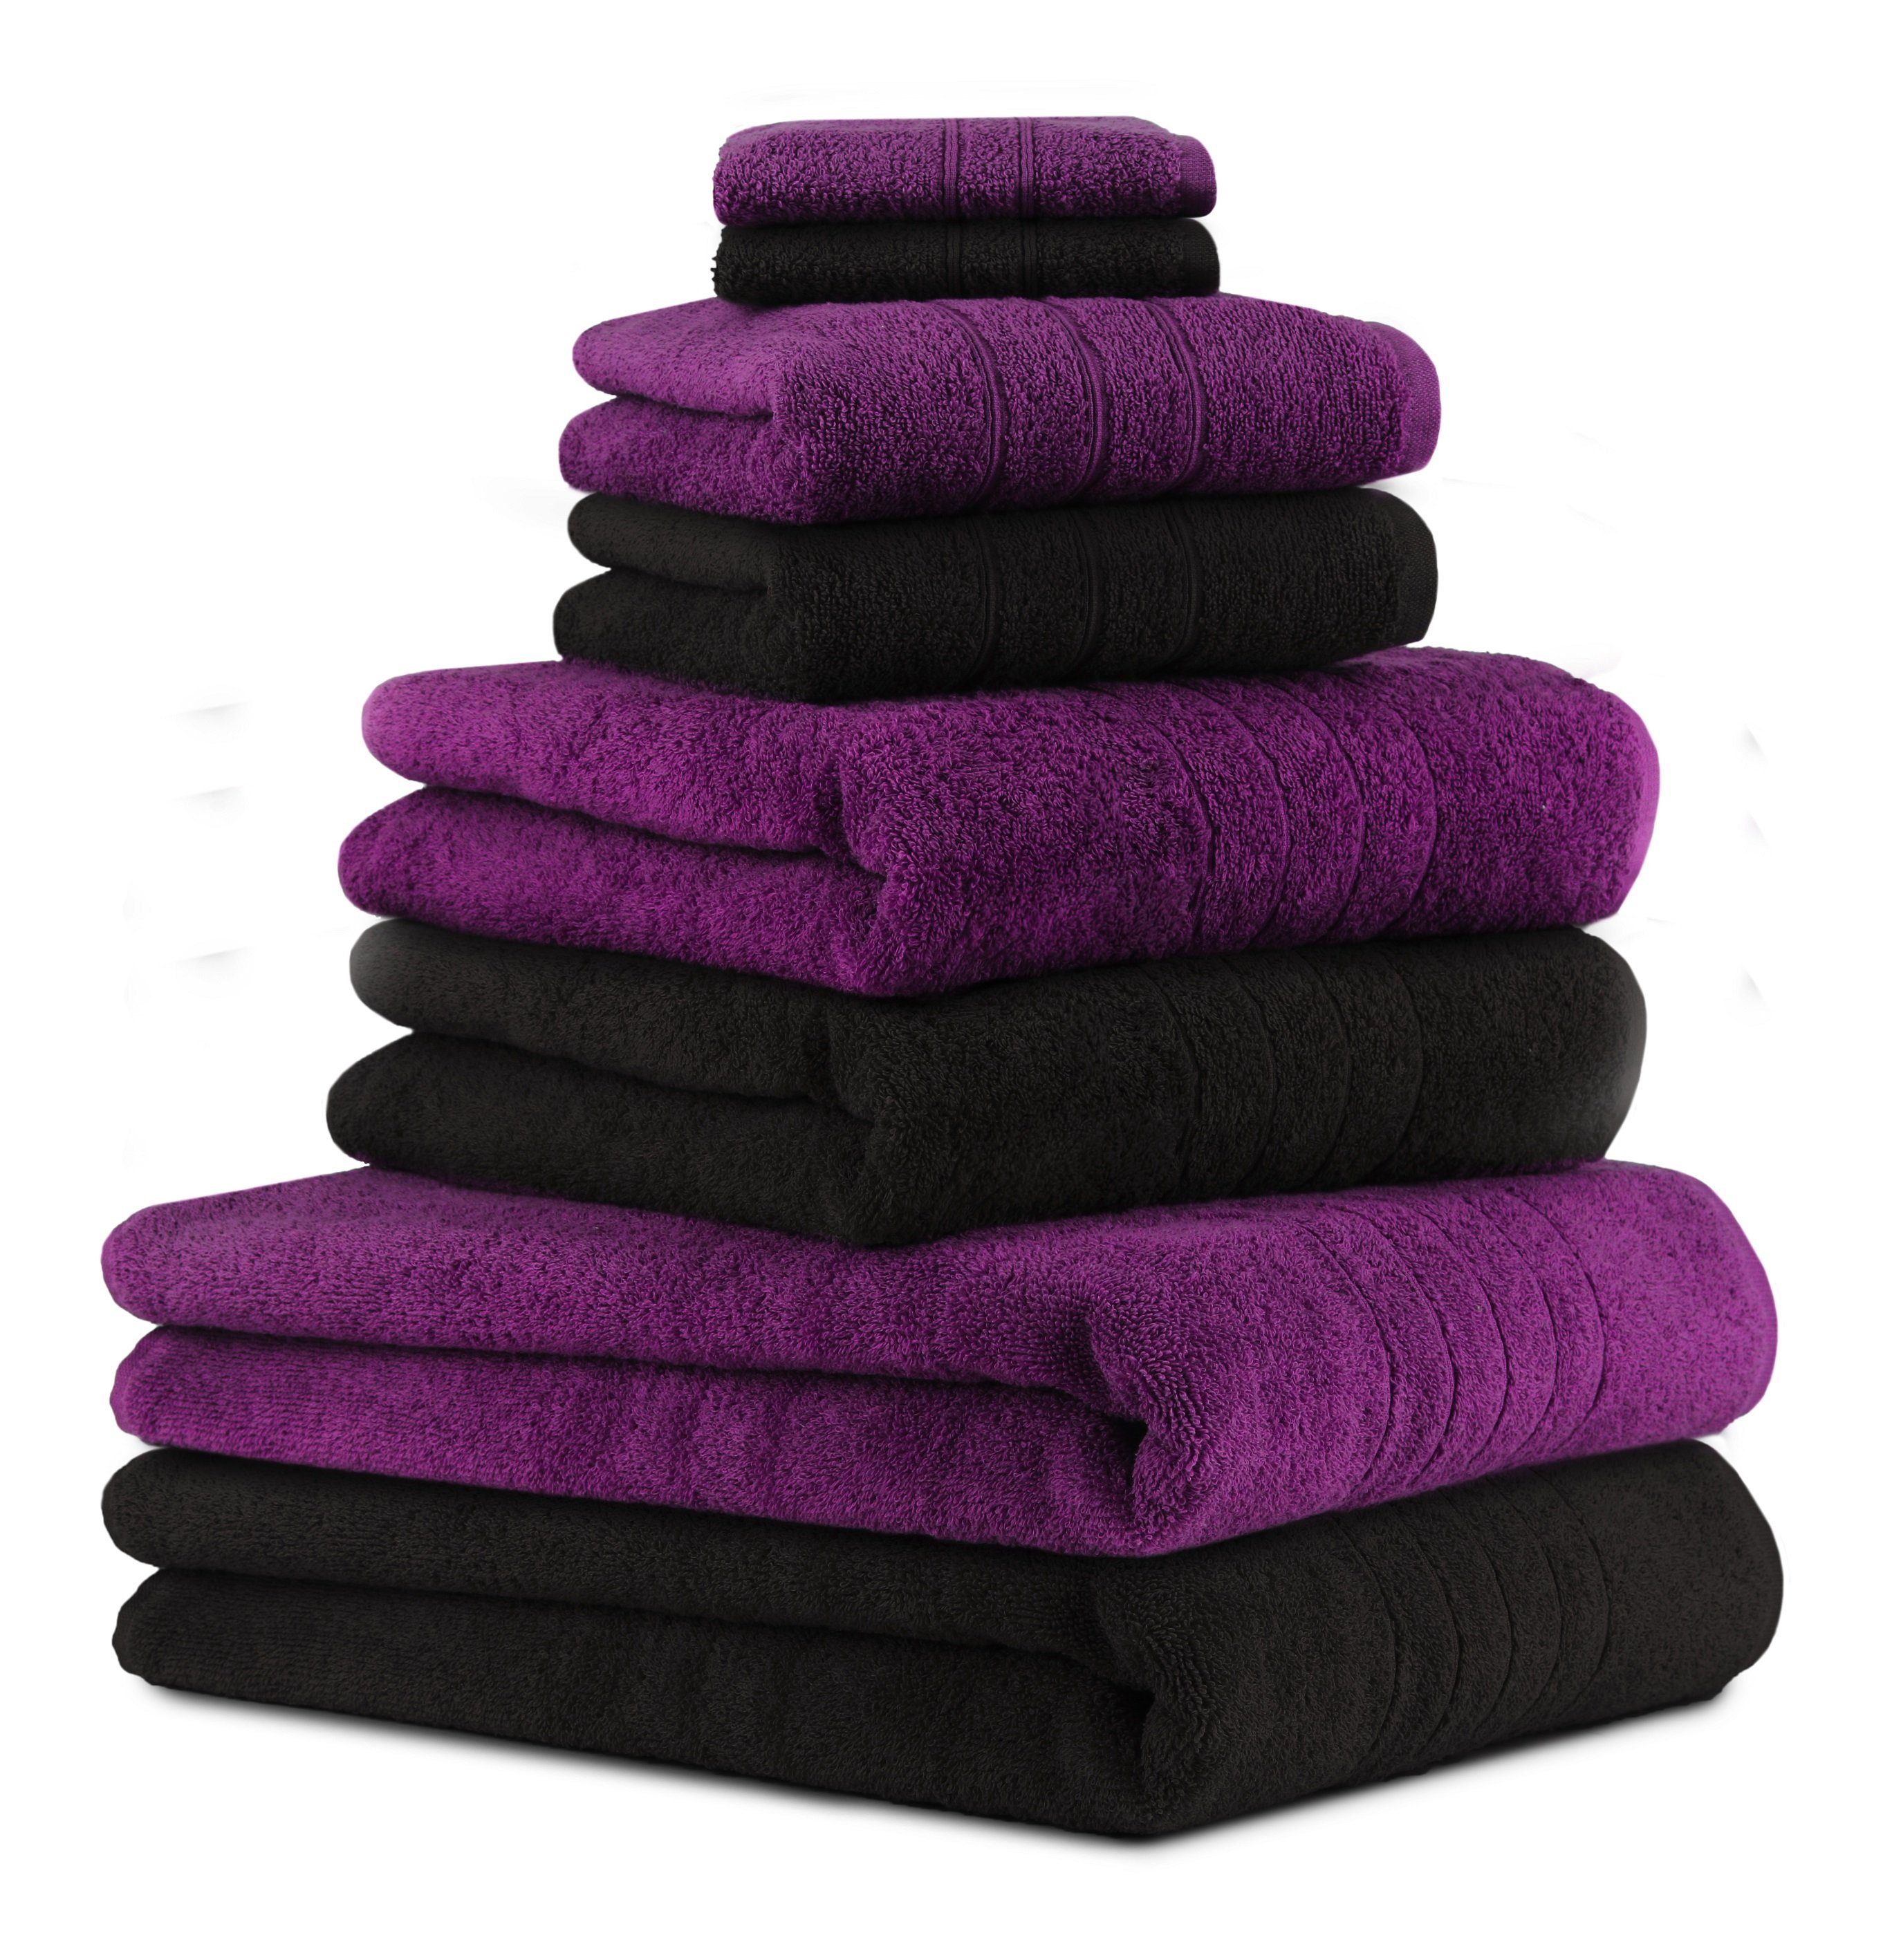 Betz Handtuch Set 8-TLG. Baumwolle Badetücher 100% schwarz, Baumwolle, 2 Deluxe Seiftücher Pflaume (8-tlg) 2 Handtücher 2 Duschtücher Farbe 2 Handtuch-Set und 100